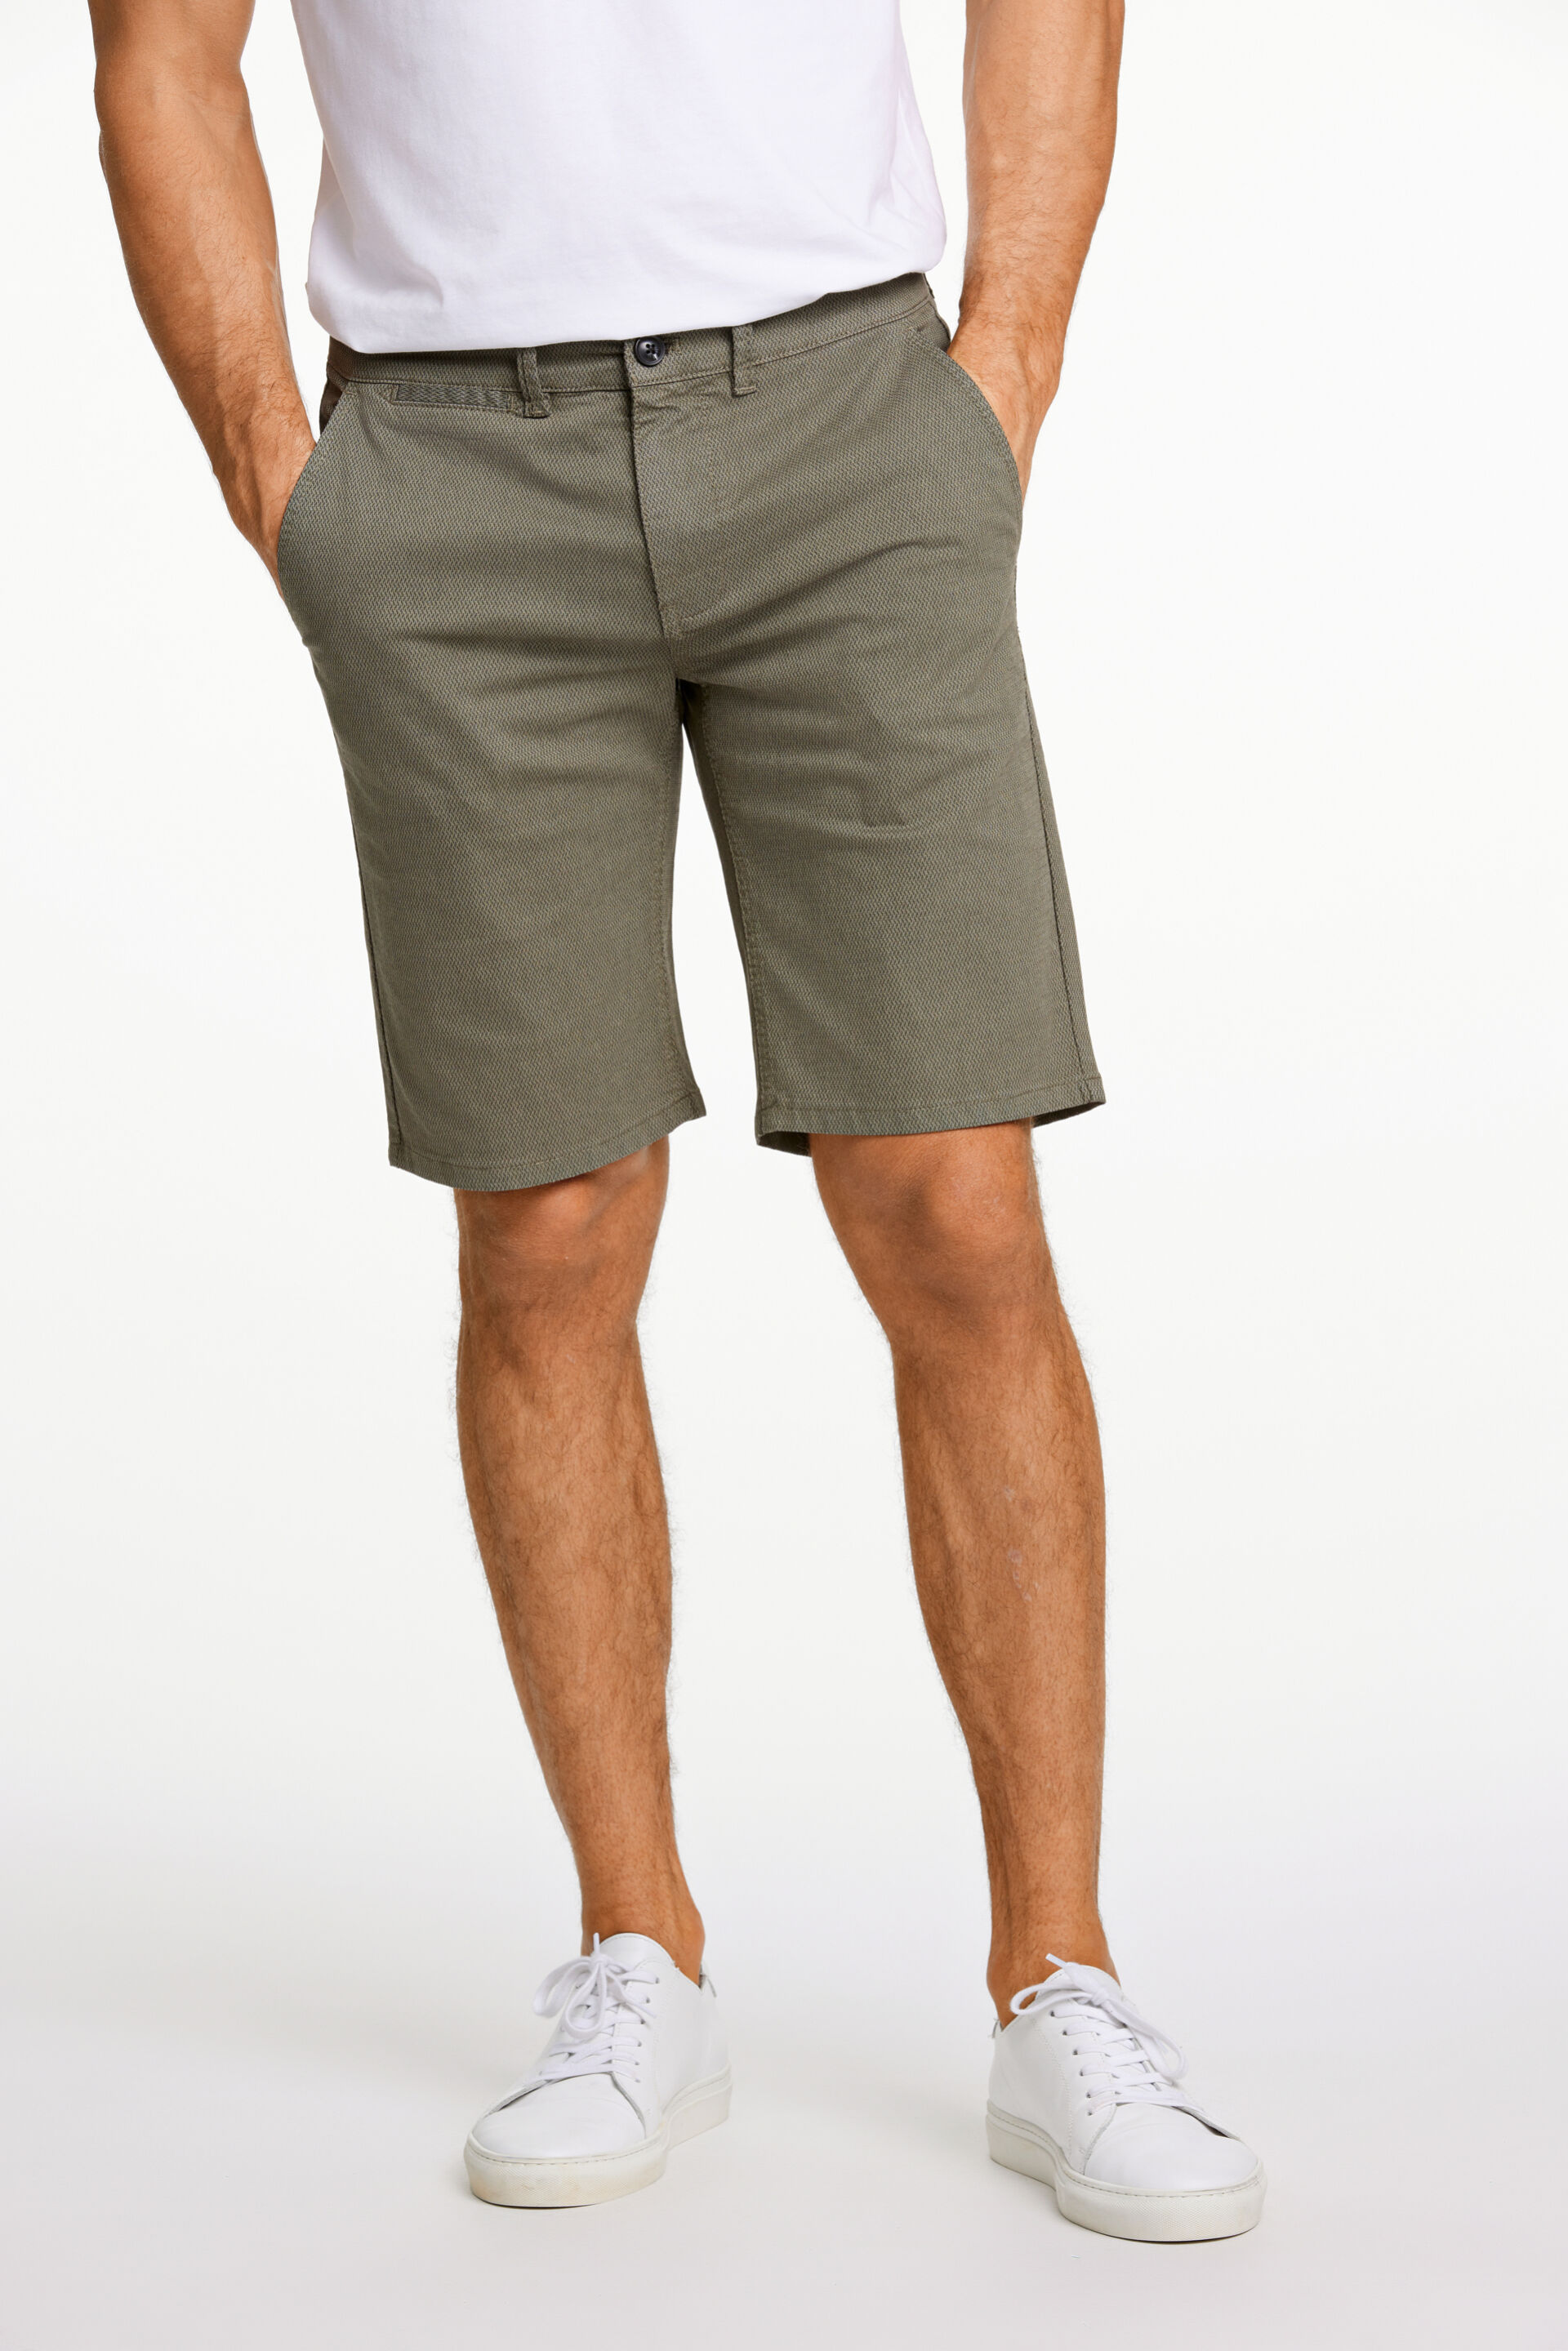 Pantalon korte broek Pantalon korte broek Groen 30-525004